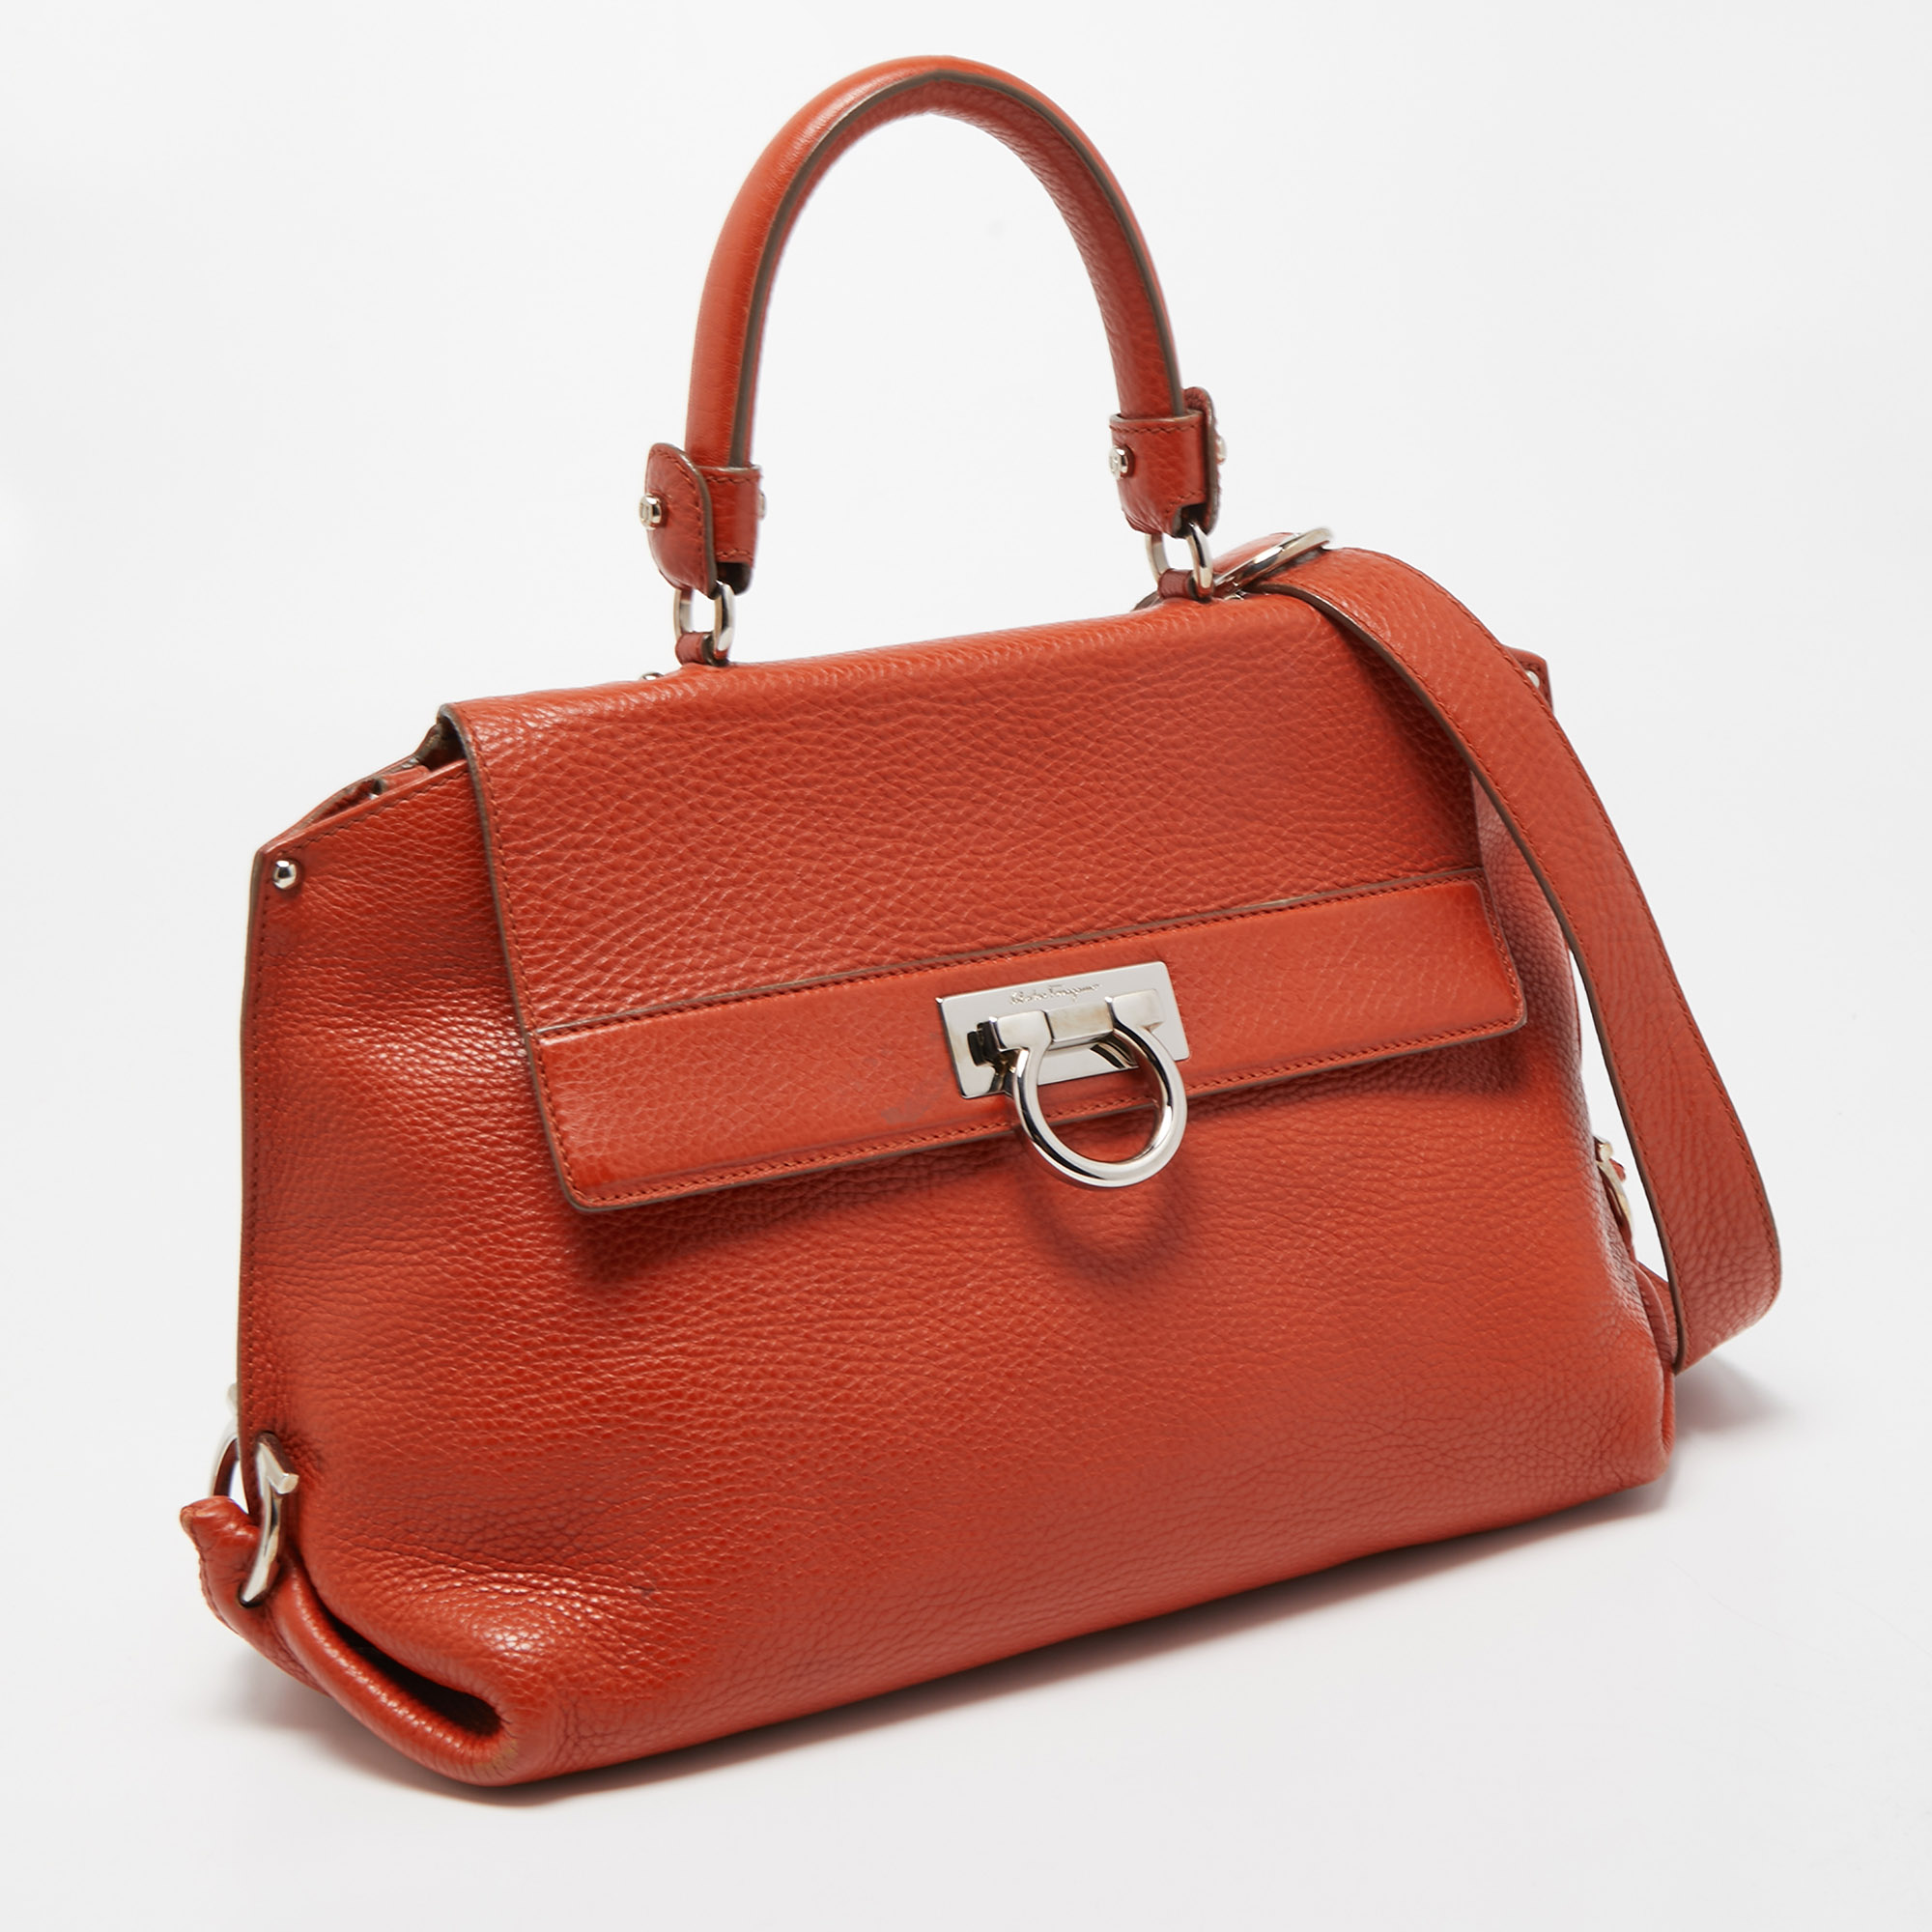 Salvatore Ferragamo Orange Leather Medium Sofia Top Handle Bag